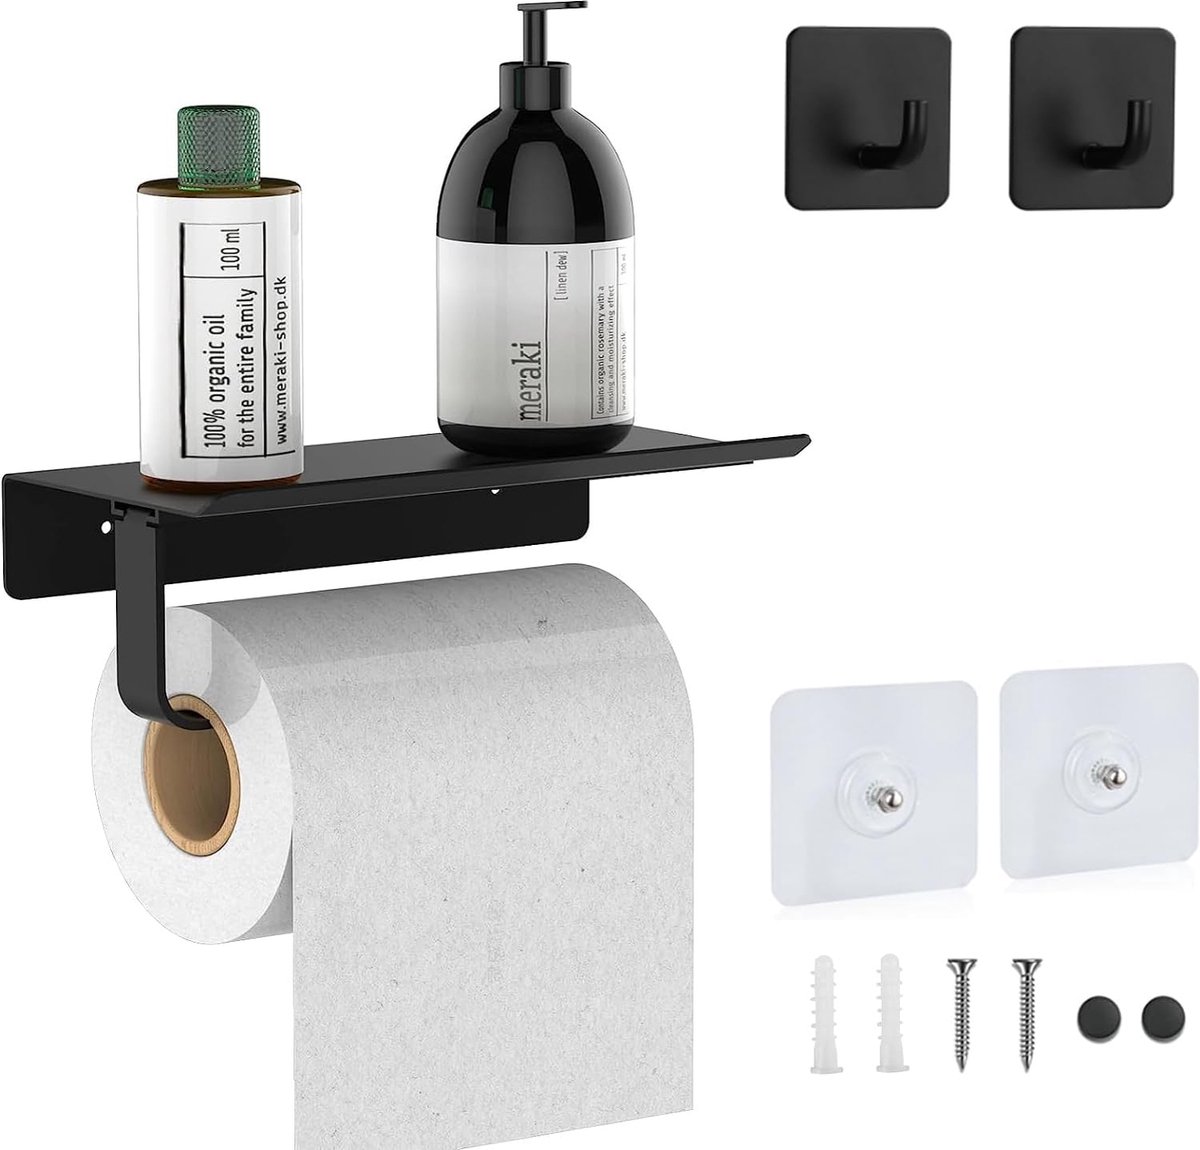 Toiletpapierhouder (geperforeerd/ongeperforeerd) met 2 zelfklevende haken, papierhouder, wc-papier, wandhouder voor toiletpapier voor toilet en keuken, zwart